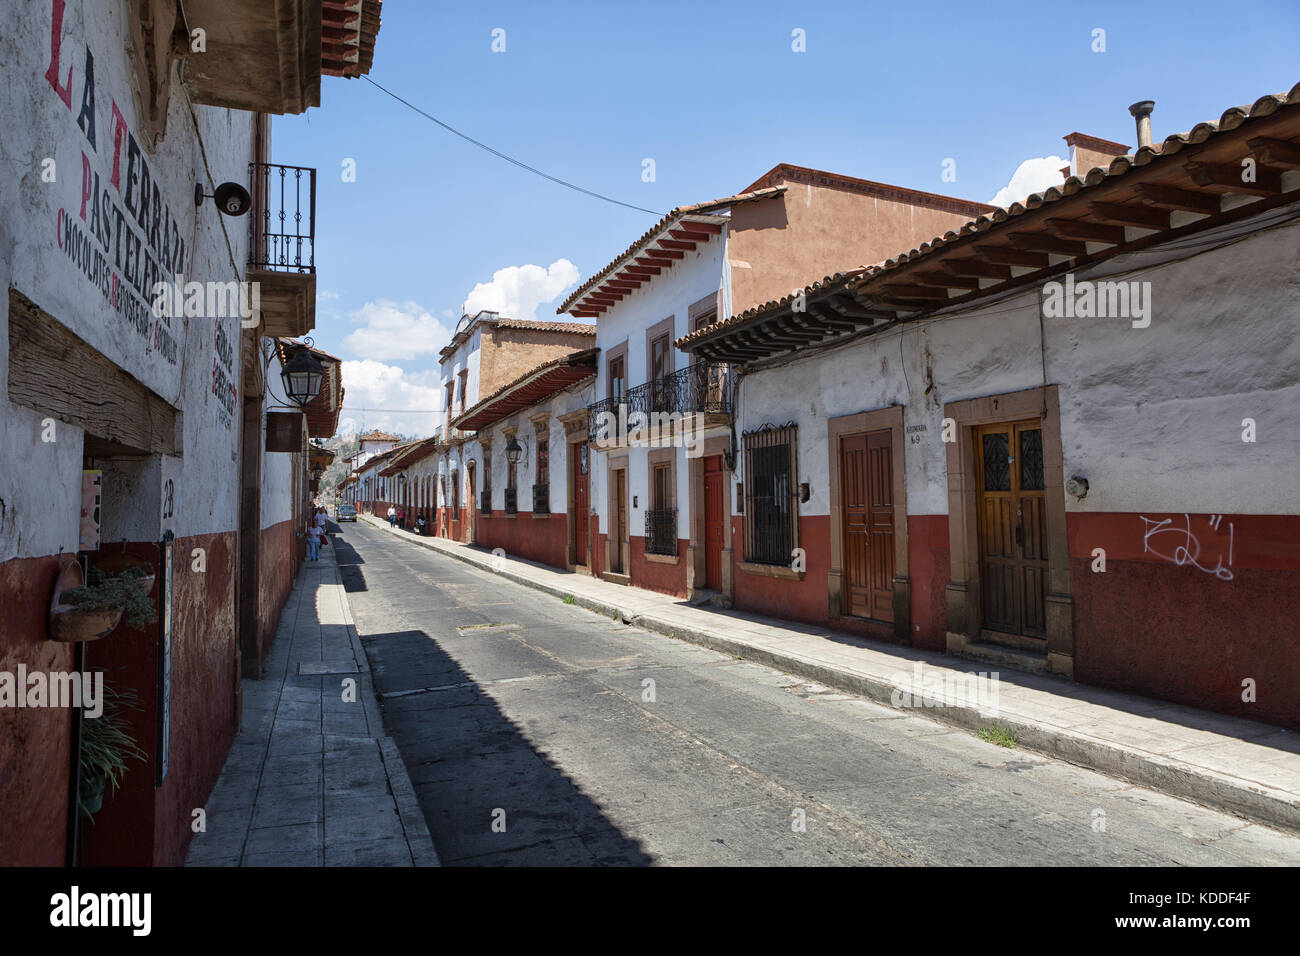 25 mars 2014 Patzcuaro, Mexique : la ville a conservé son aspect colonial au fil du temps, avec des bâtiments en adobe et toits Banque D'Images